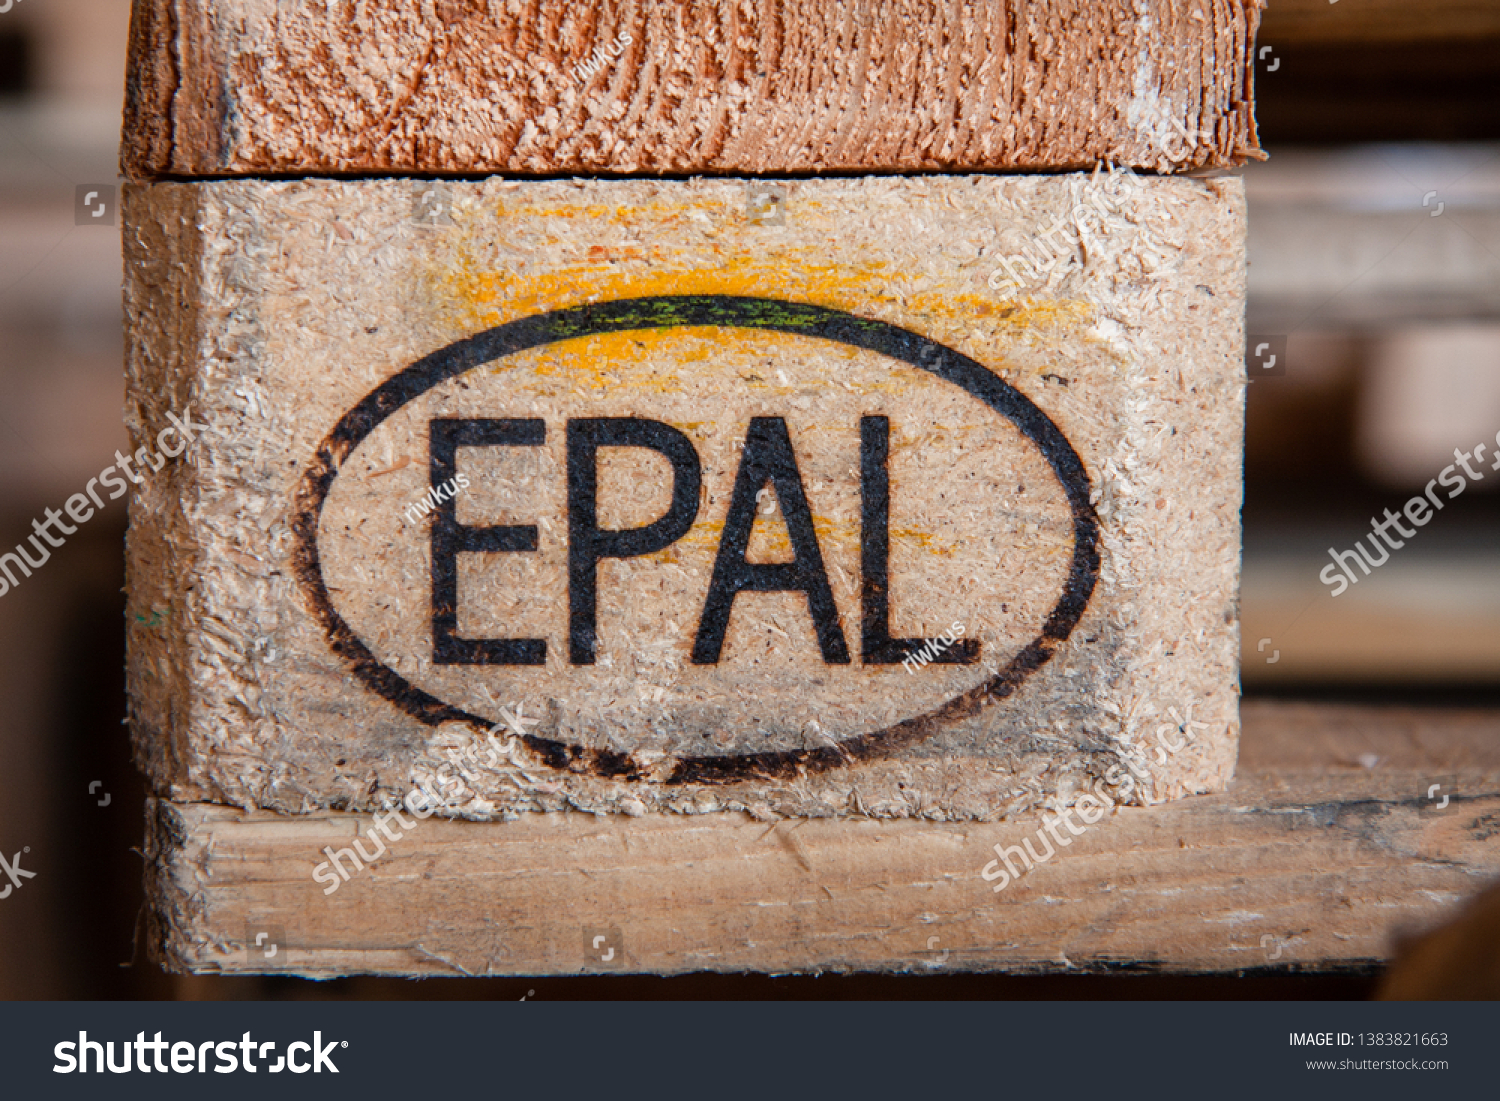 Epal ePal Study